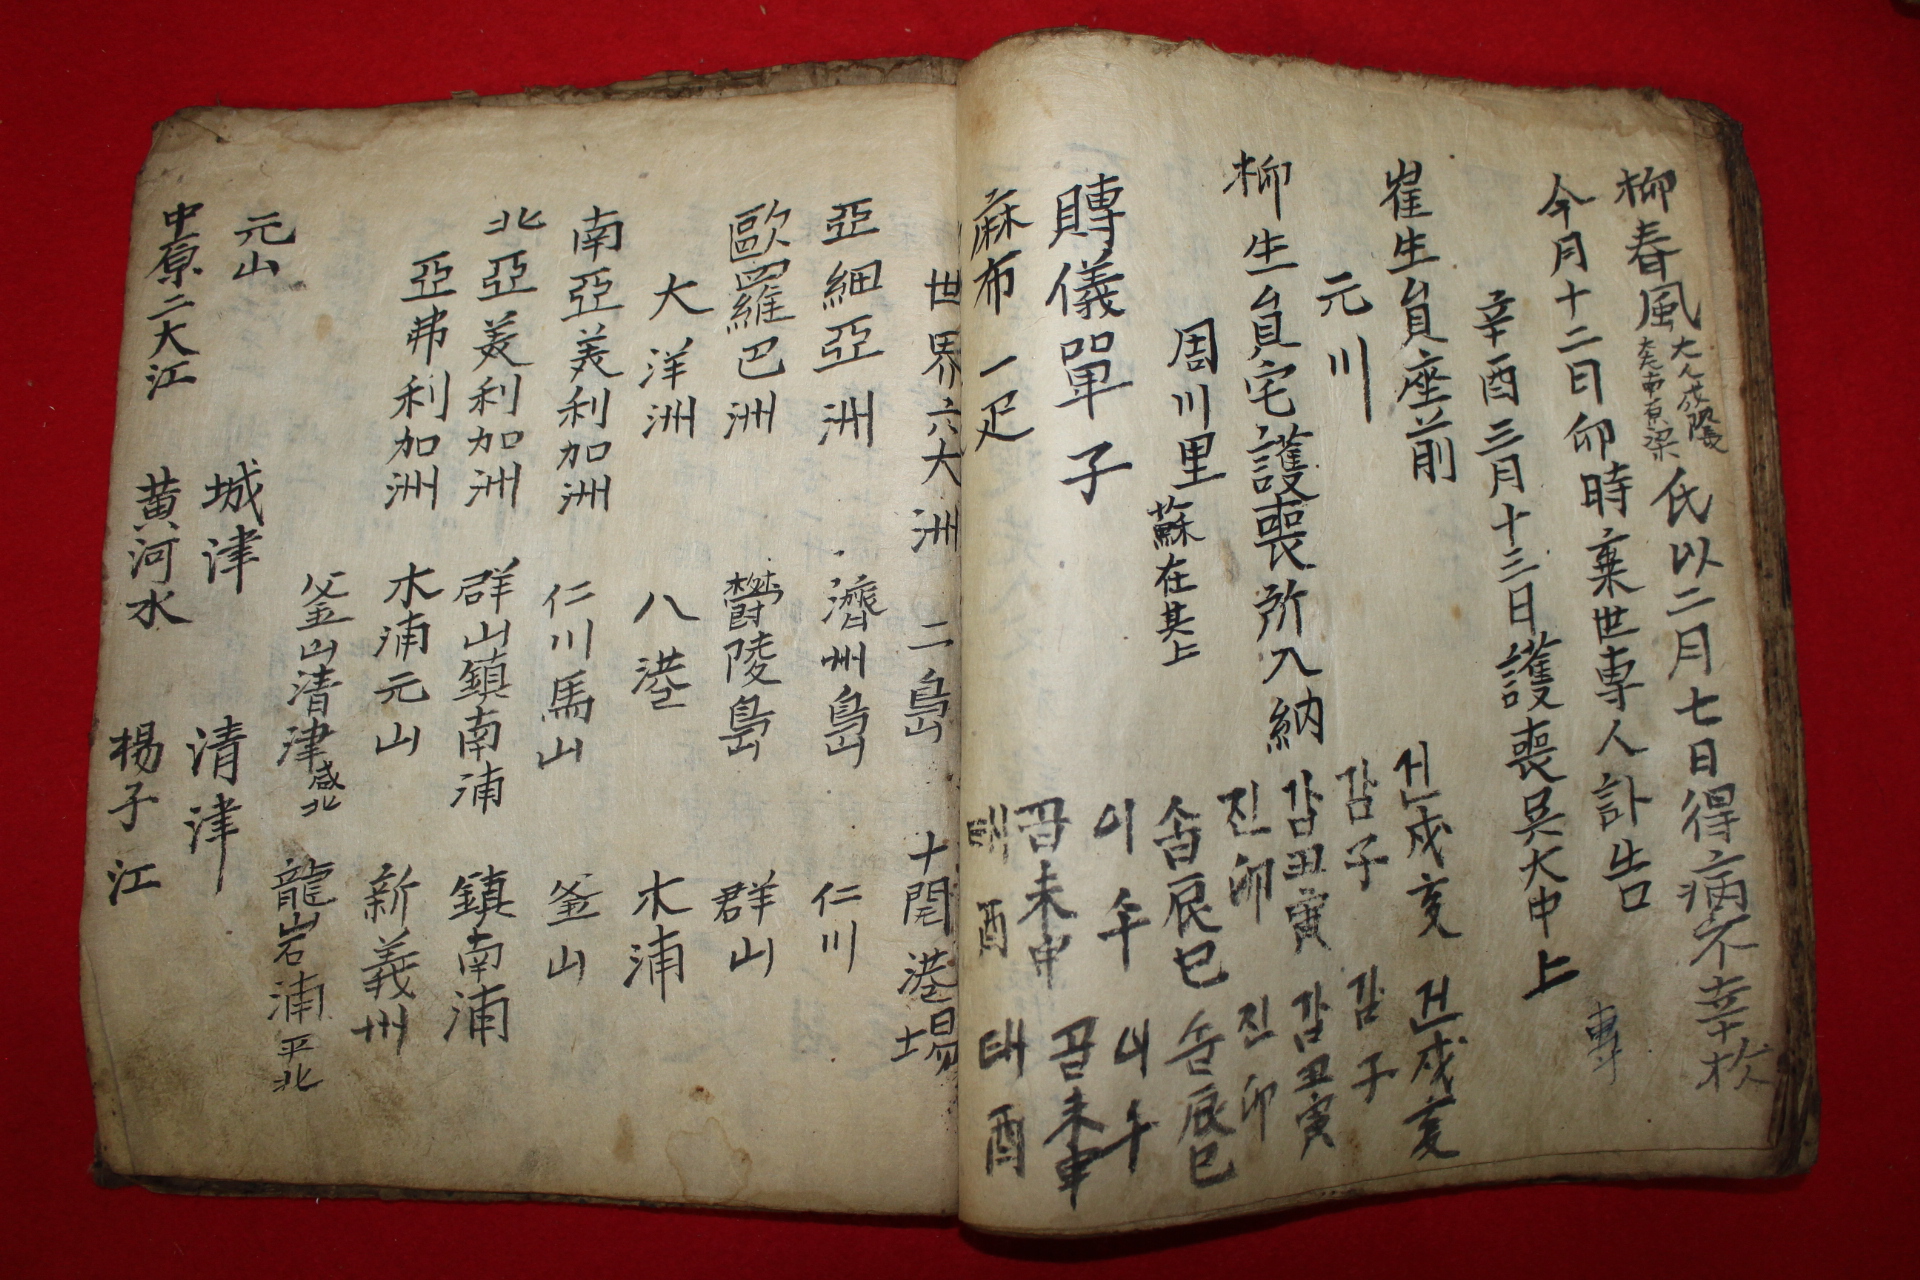 조선시대 필사본 주해척독(註解尺牘) 1책